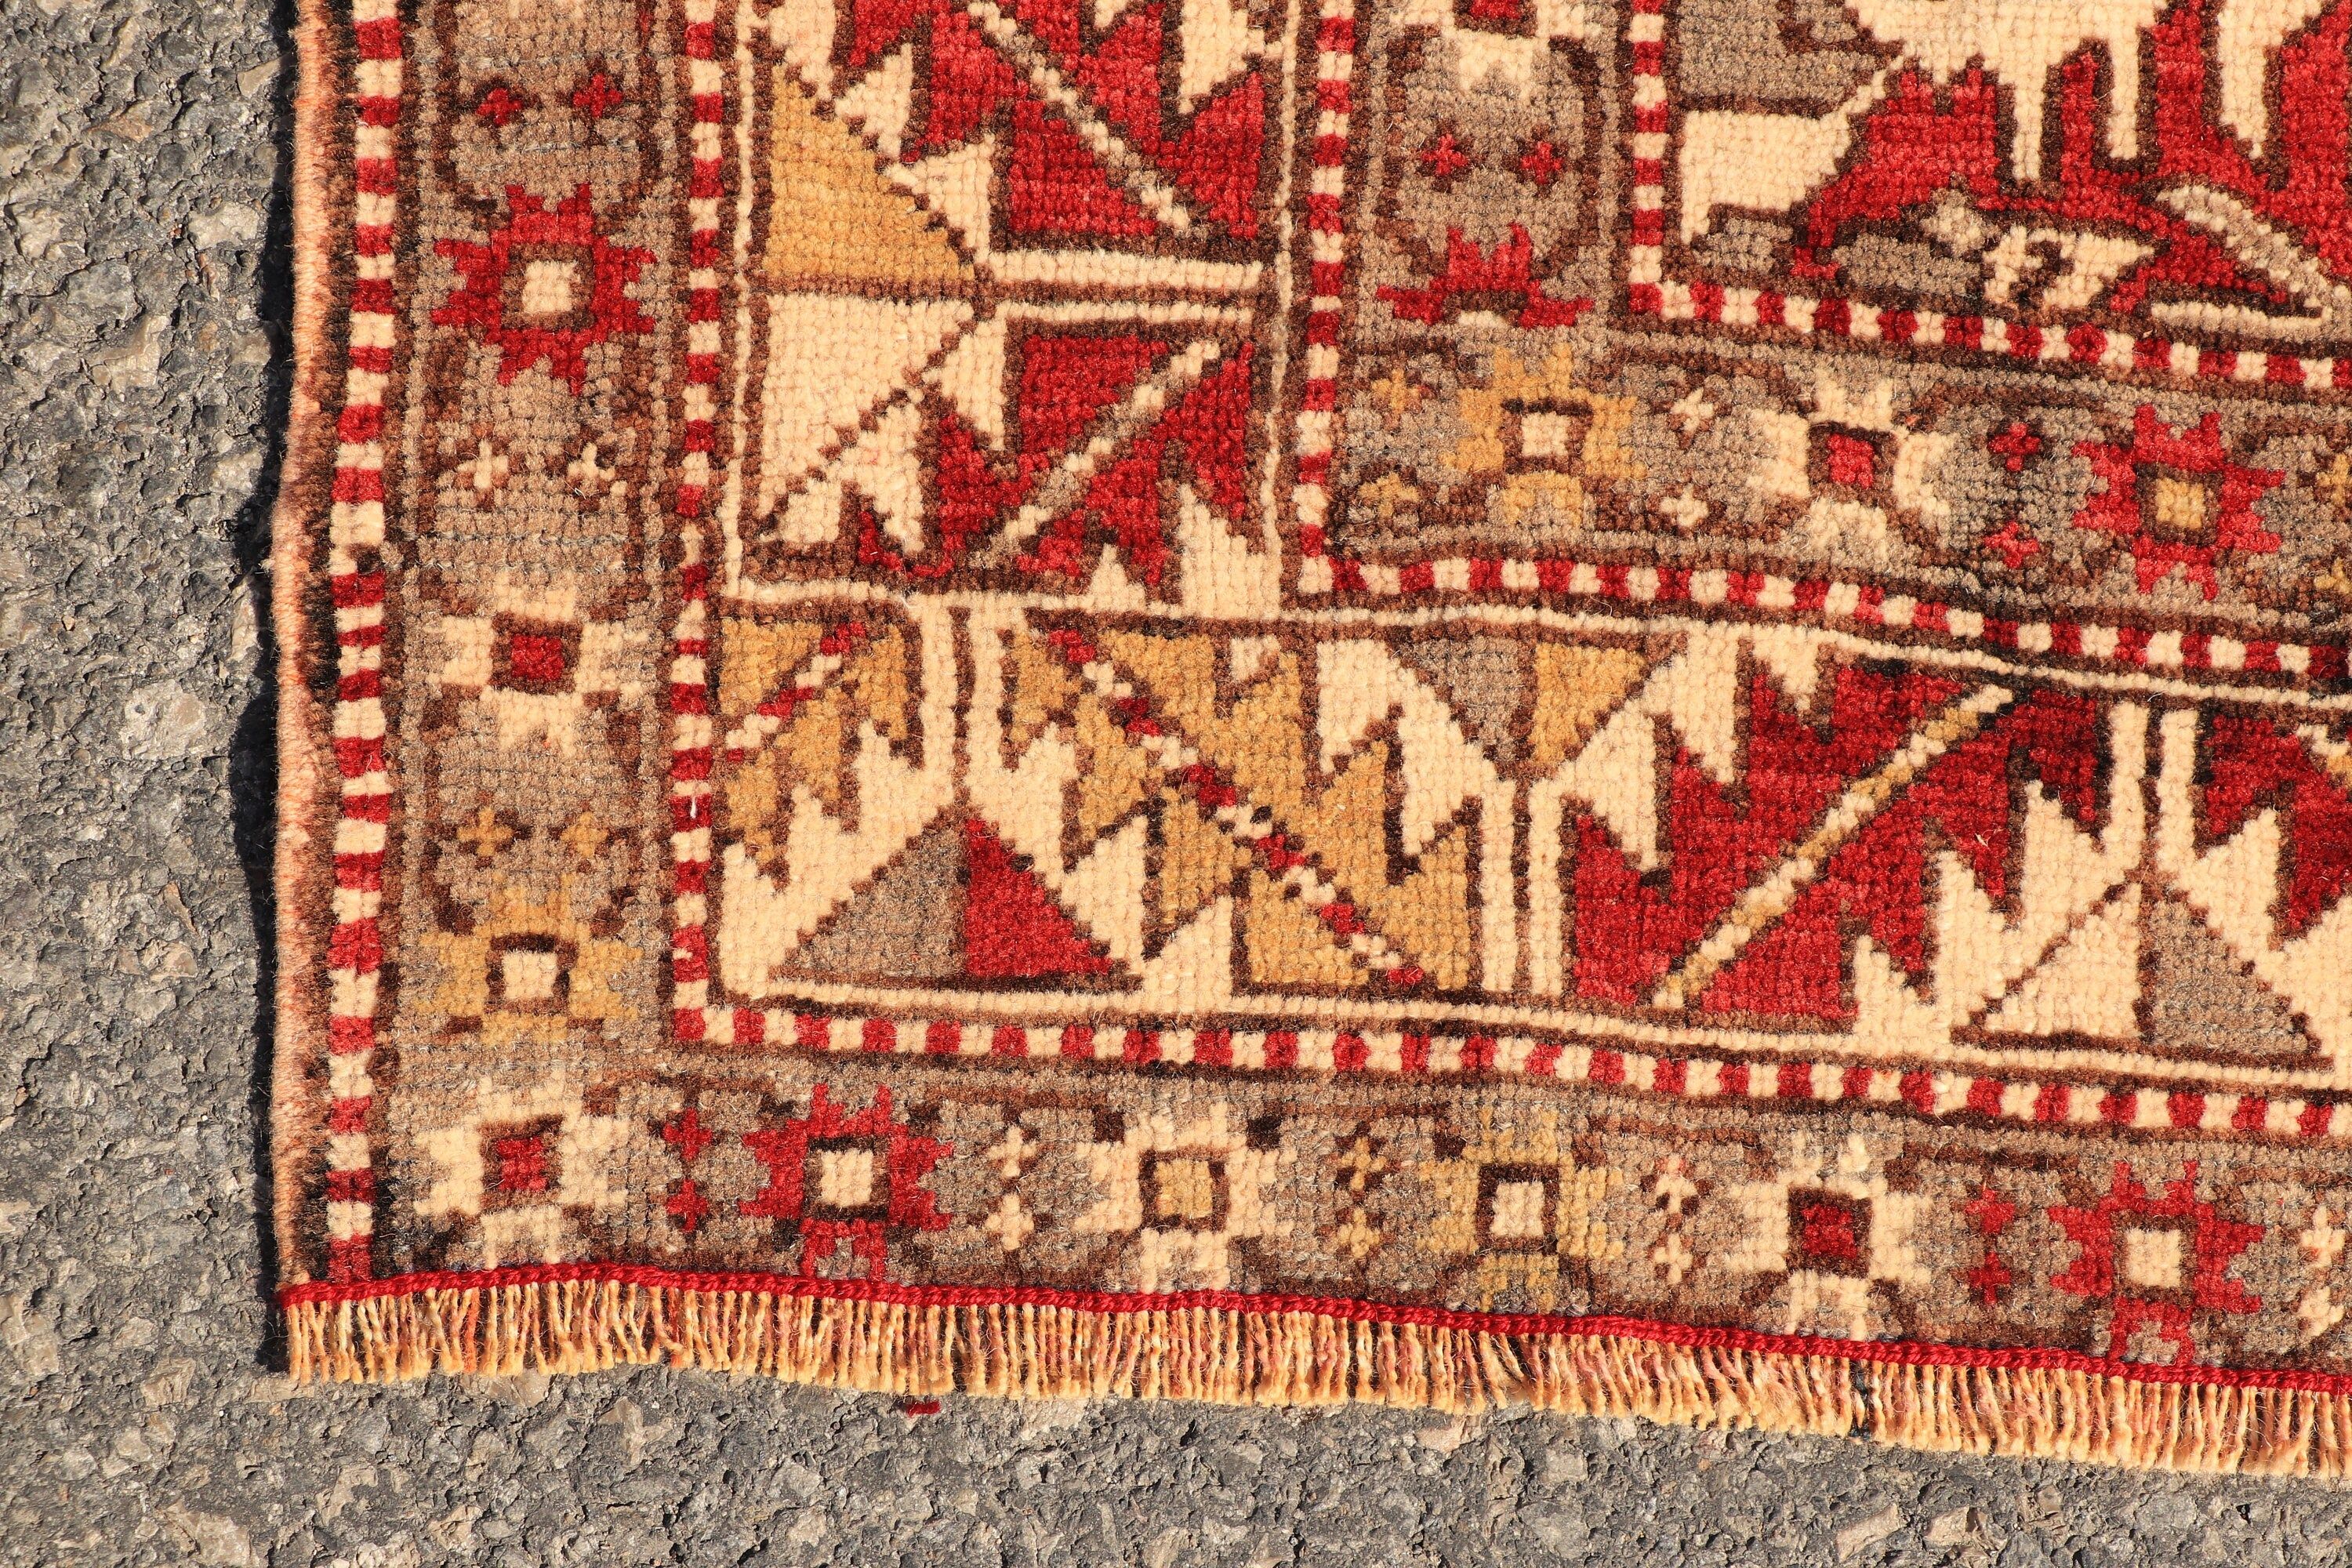 Turkish Rug, Rugs for Bedroom, Red Moroccan Rug, Wool Rug, Tribal Rugs, 3.9x6.3 ft Area Rugs, Vintage Rug, Bedroom Rug, Floor Rug, Pale Rug